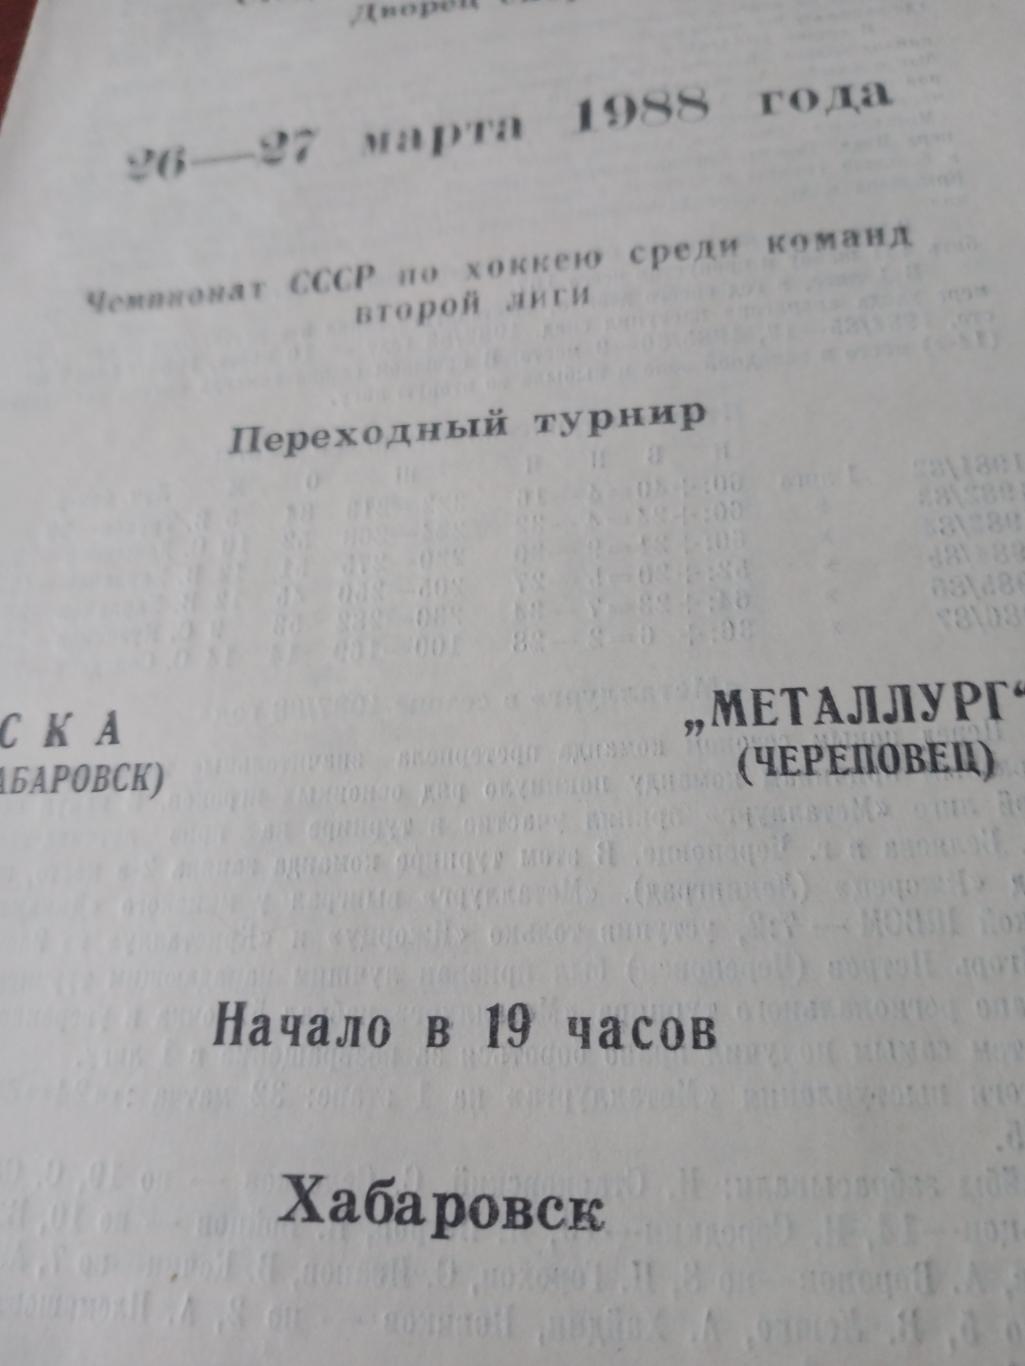 СКА Хабаровск - Металлург Череповец. 26 и 27 марта 1988 год